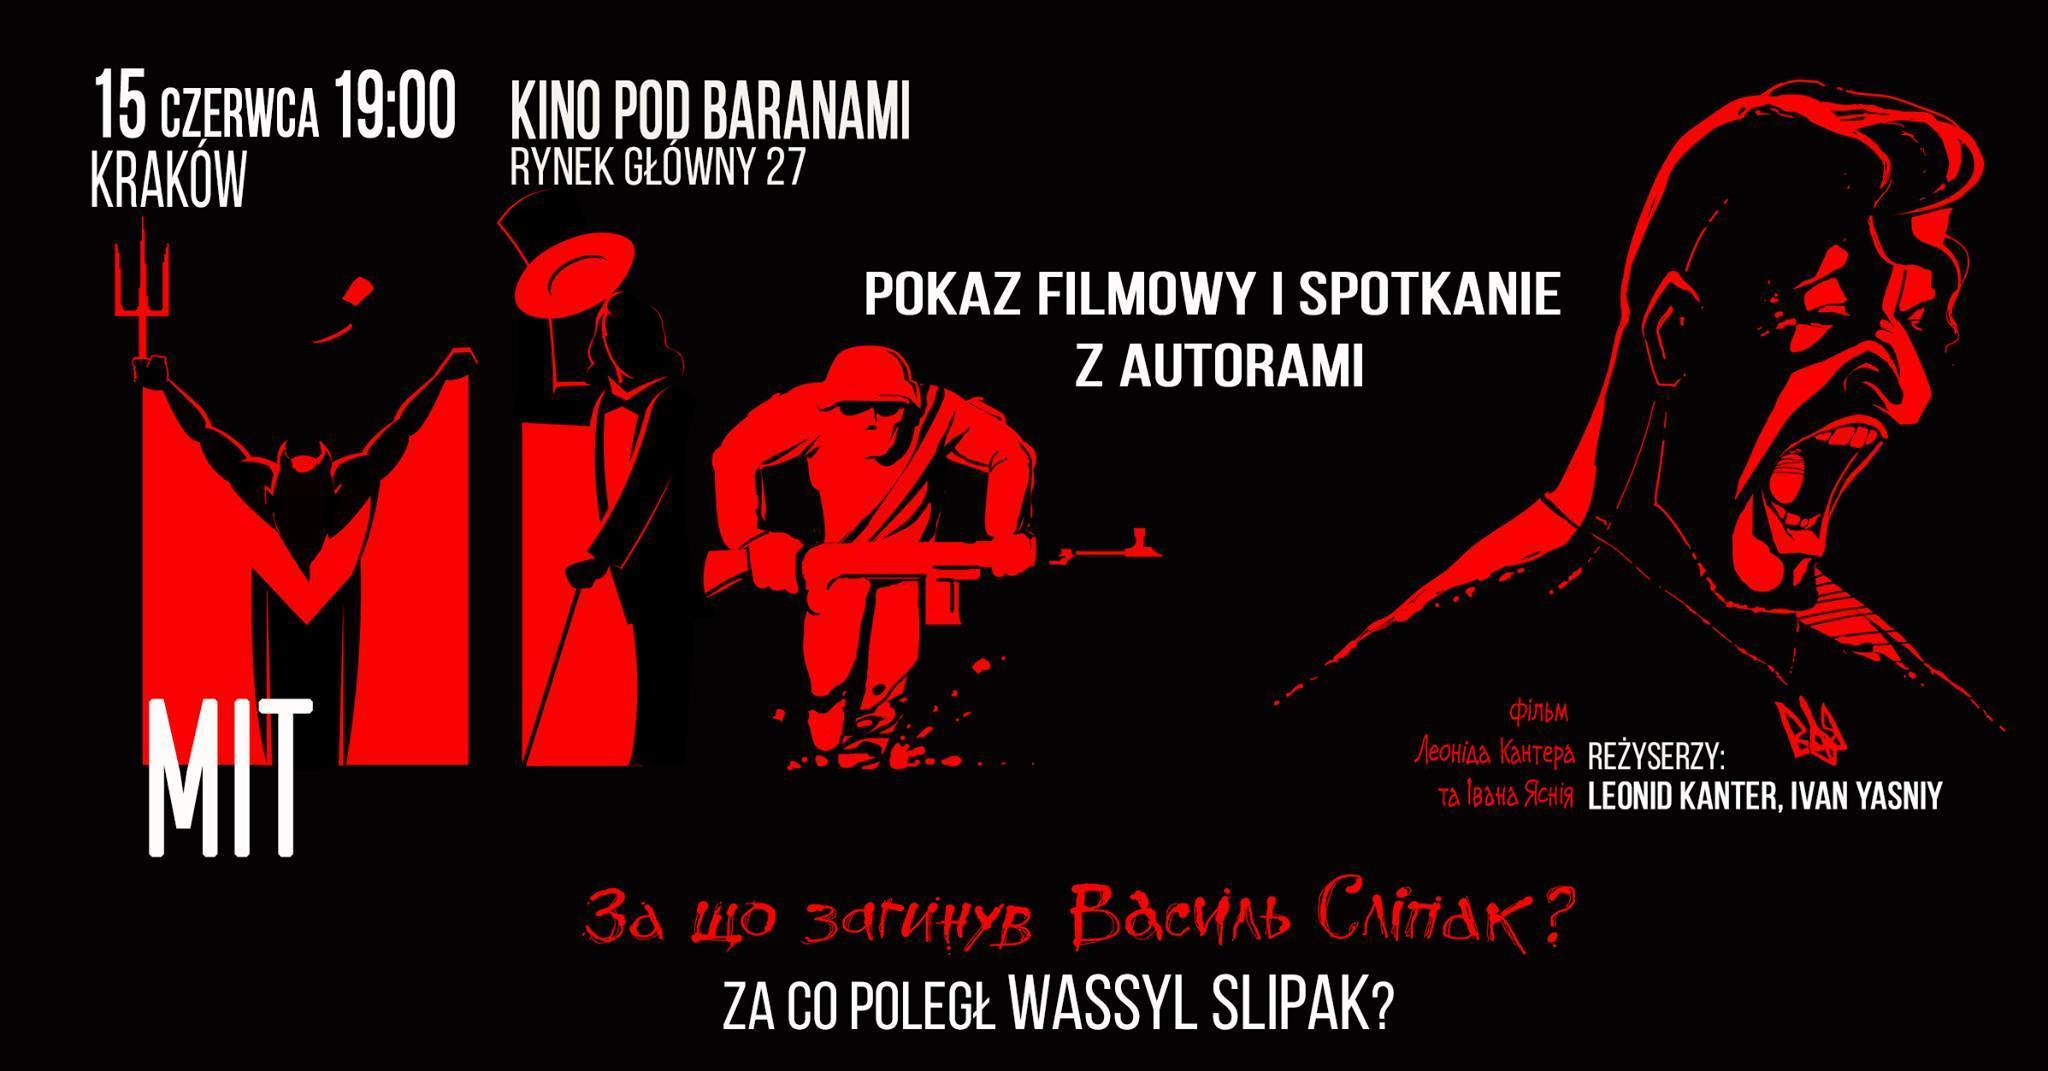 Показ фільму “МІФ” у Кракові та зустріч із творчою групою